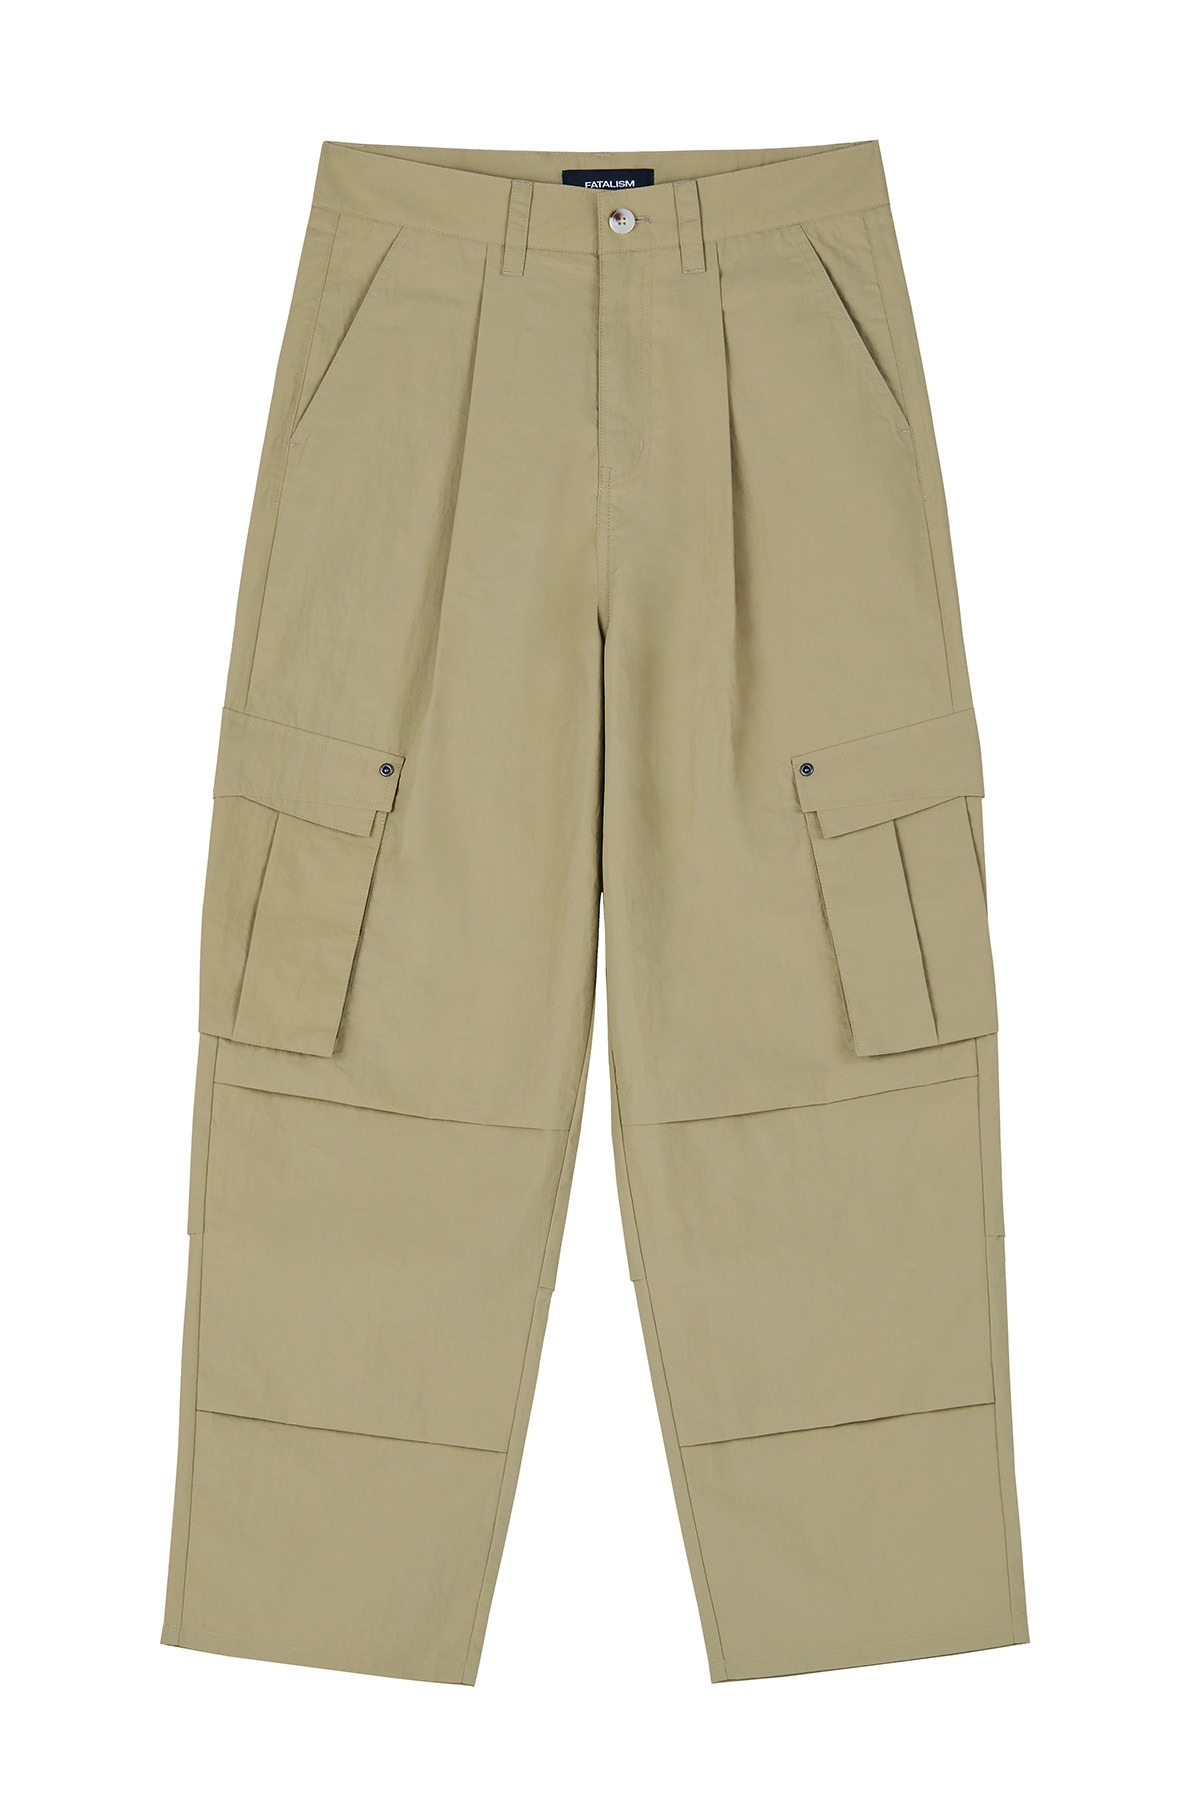 [06/28 예약배송] #0351 Military cargo pants beige